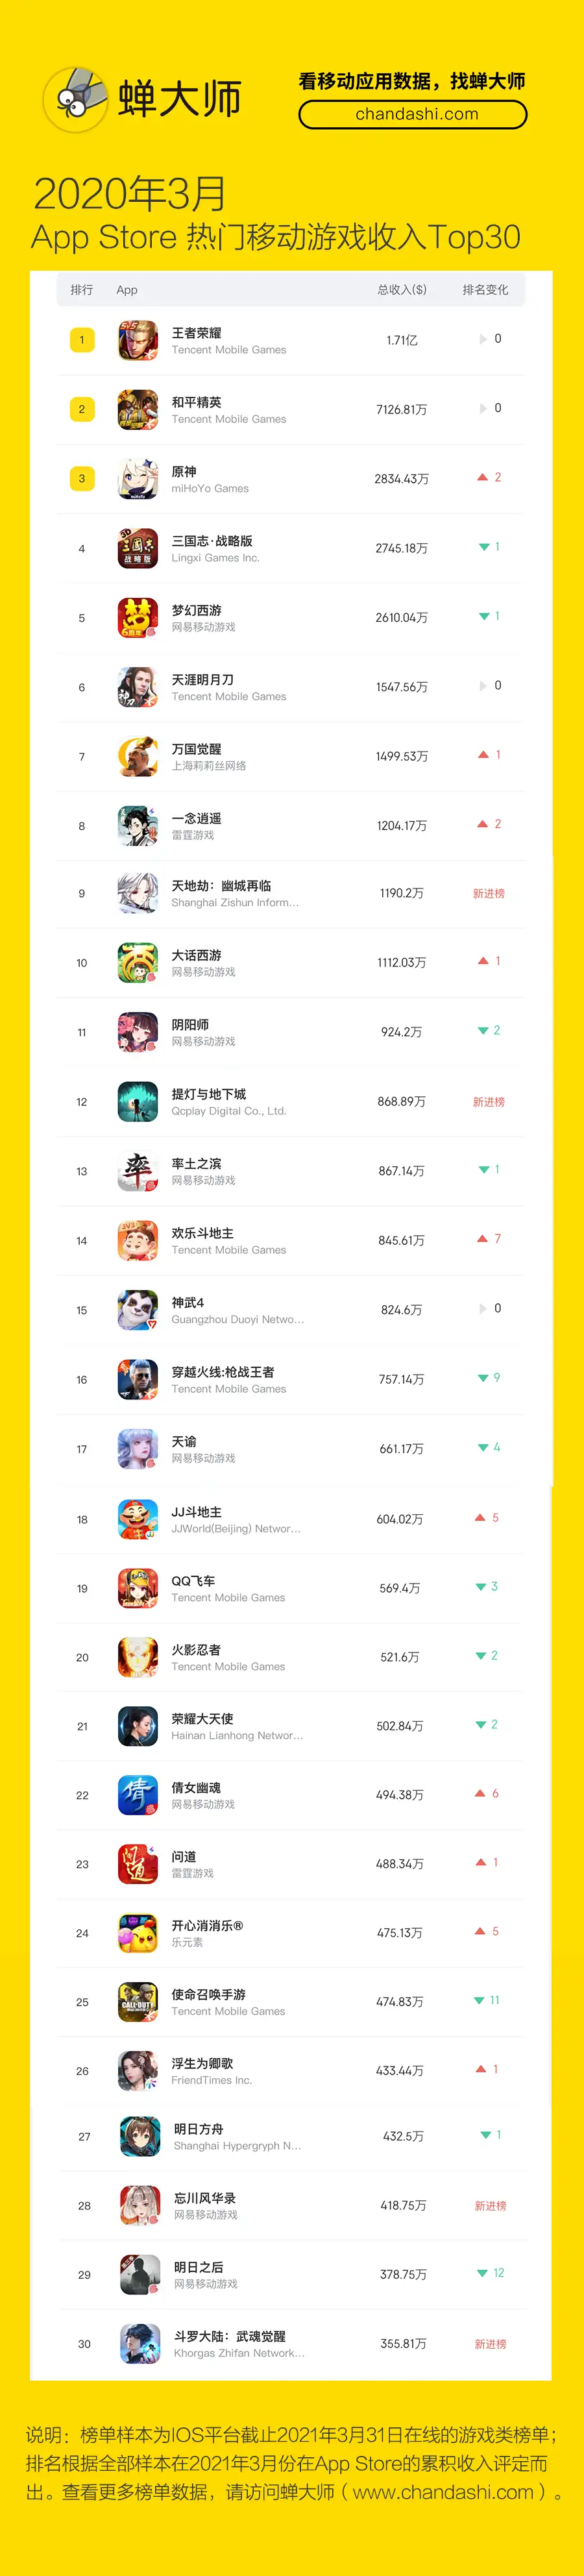 蝉大师：2021年3月App Store热门手游收入排行Top30榜单- 知乎